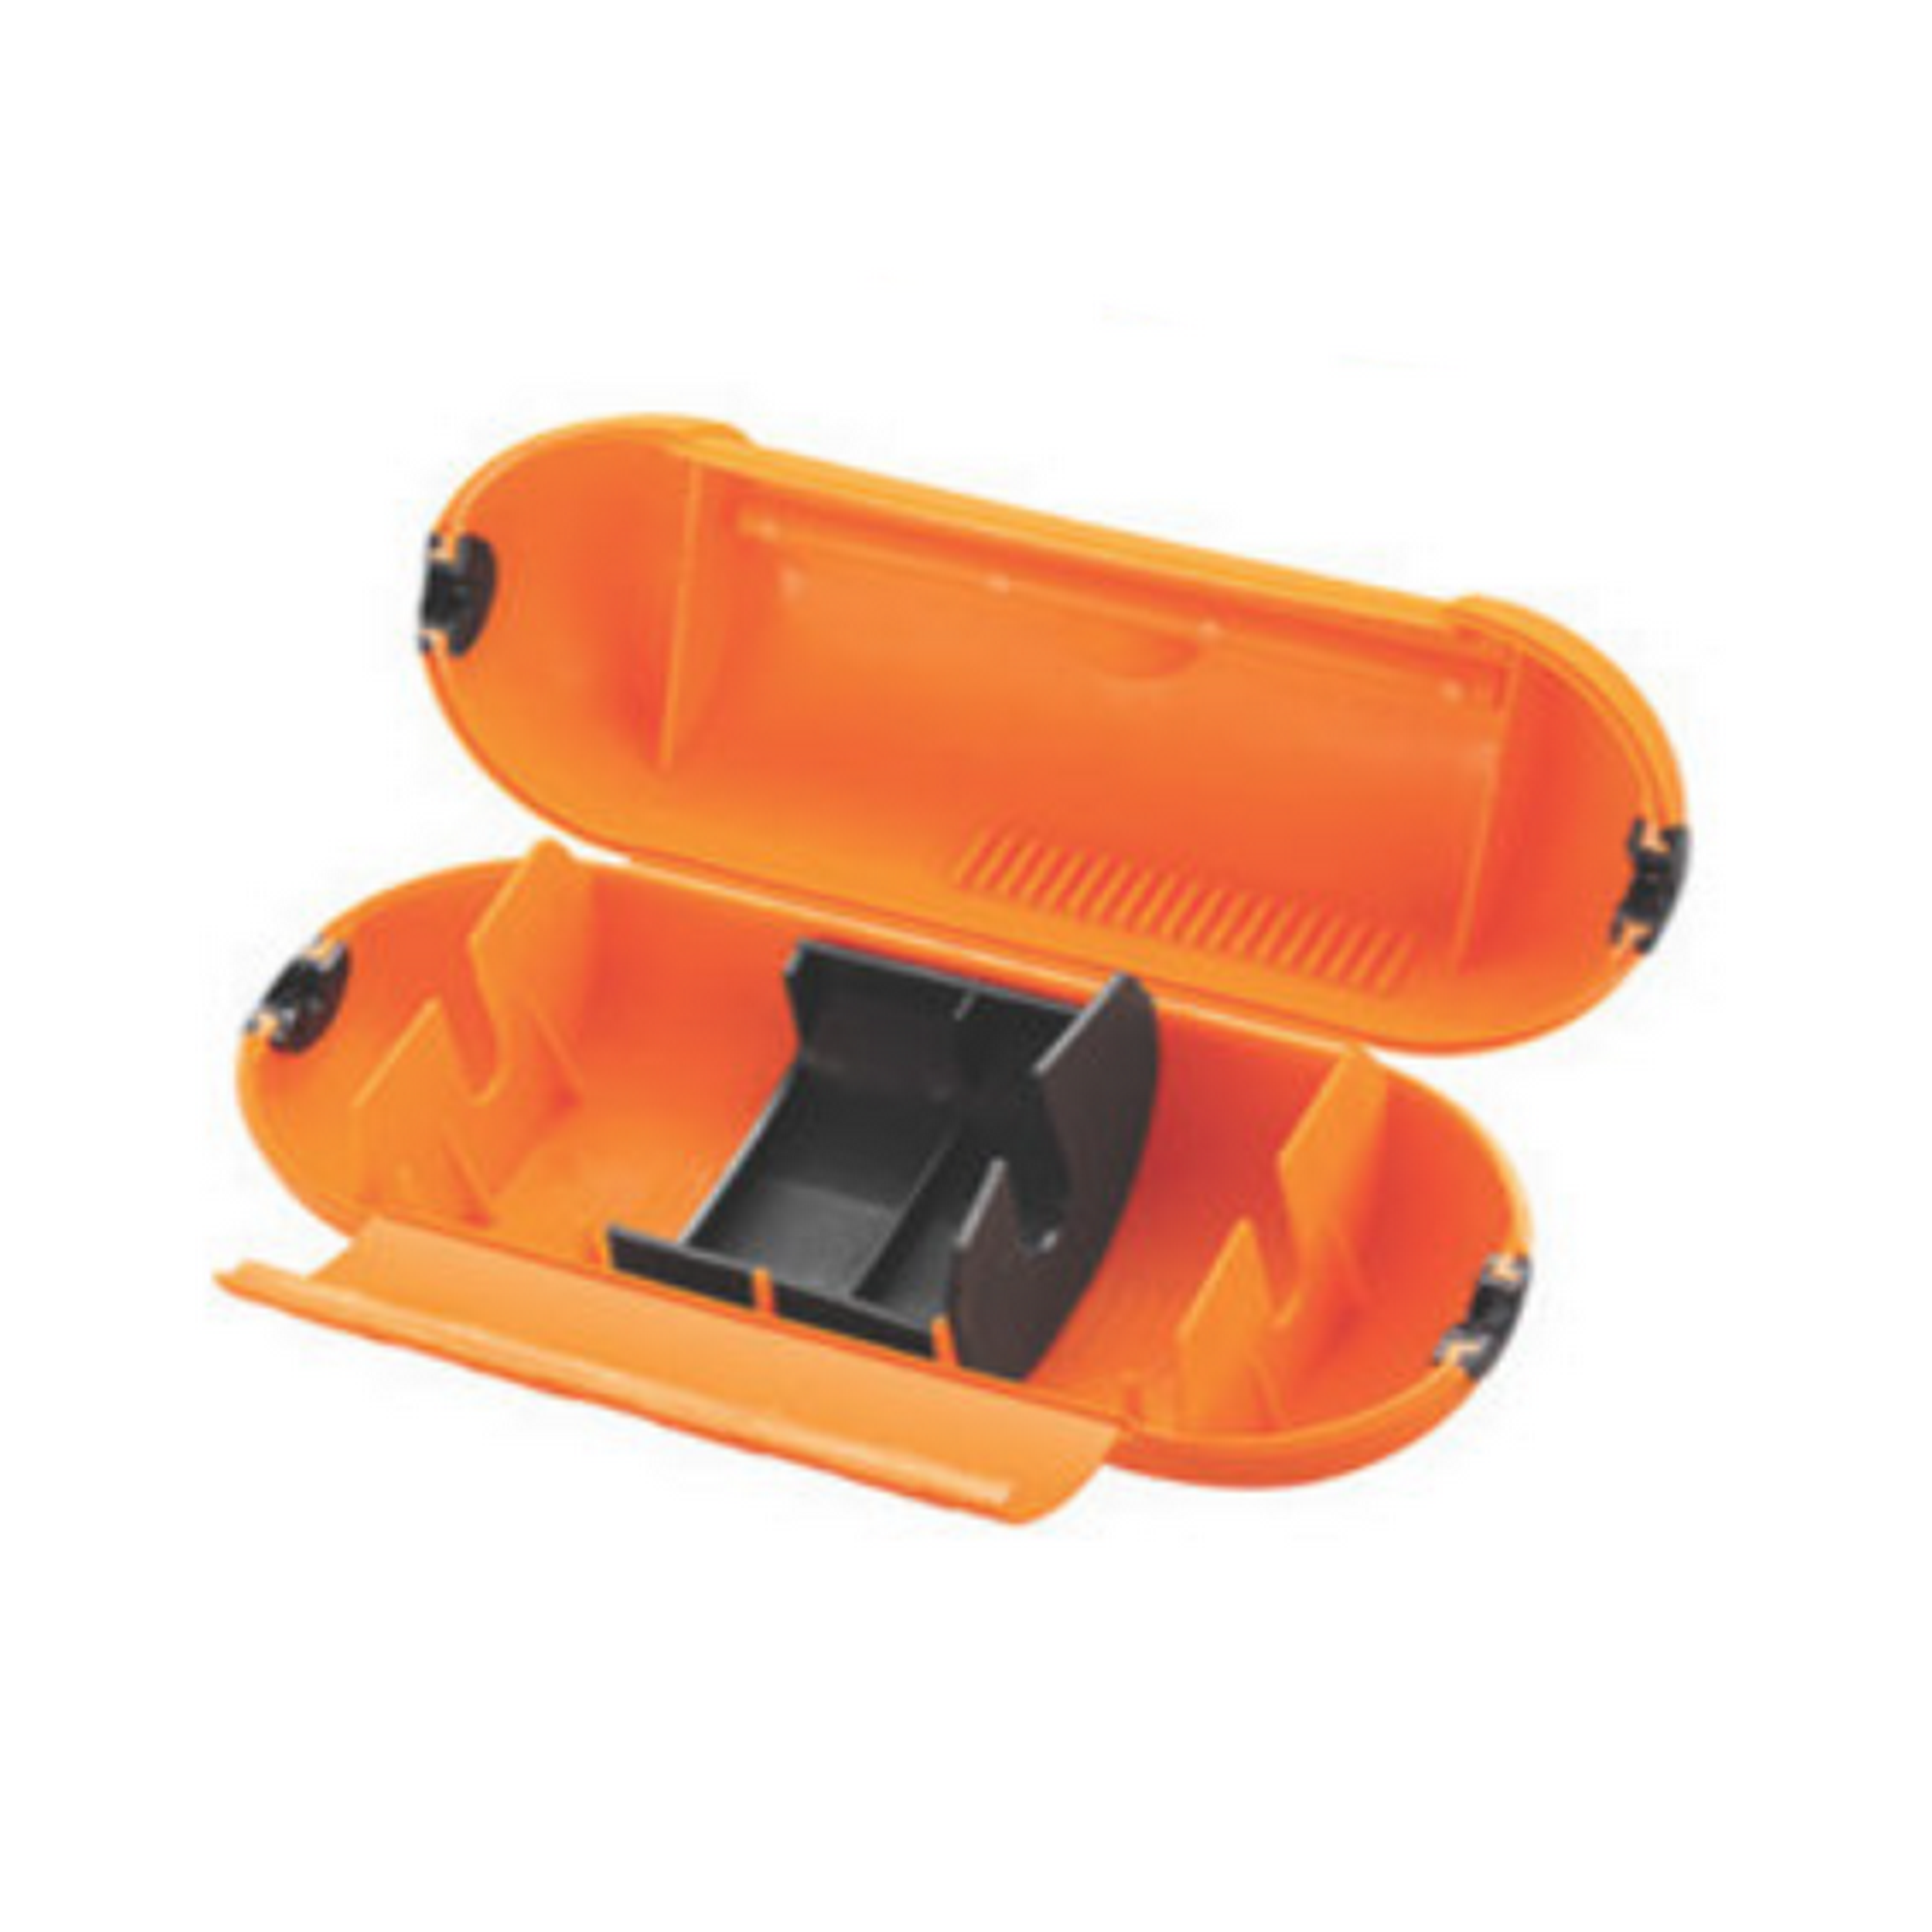 Sicherheitsbox orange 8,6 x 23 cm + product picture